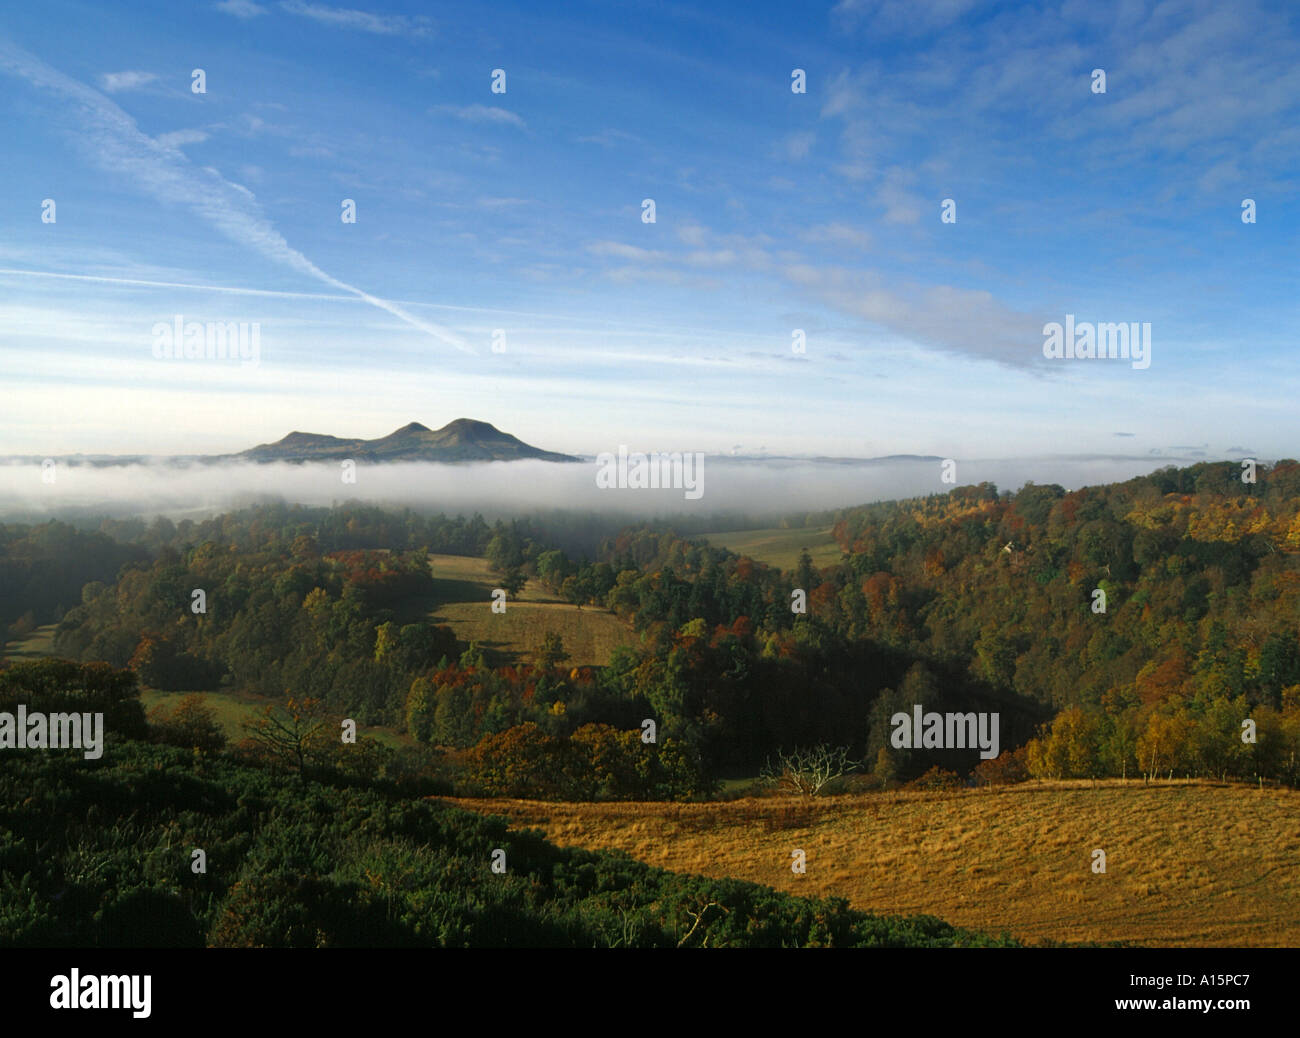 dh Scotts View EILDON HILLS GRENZT an Felder Bäume nebeliges Tal Und Hügel schottland Morgen Tau Landschaft großbritannien Herbst Nebel dramatisch schottische Grenze Stockfoto